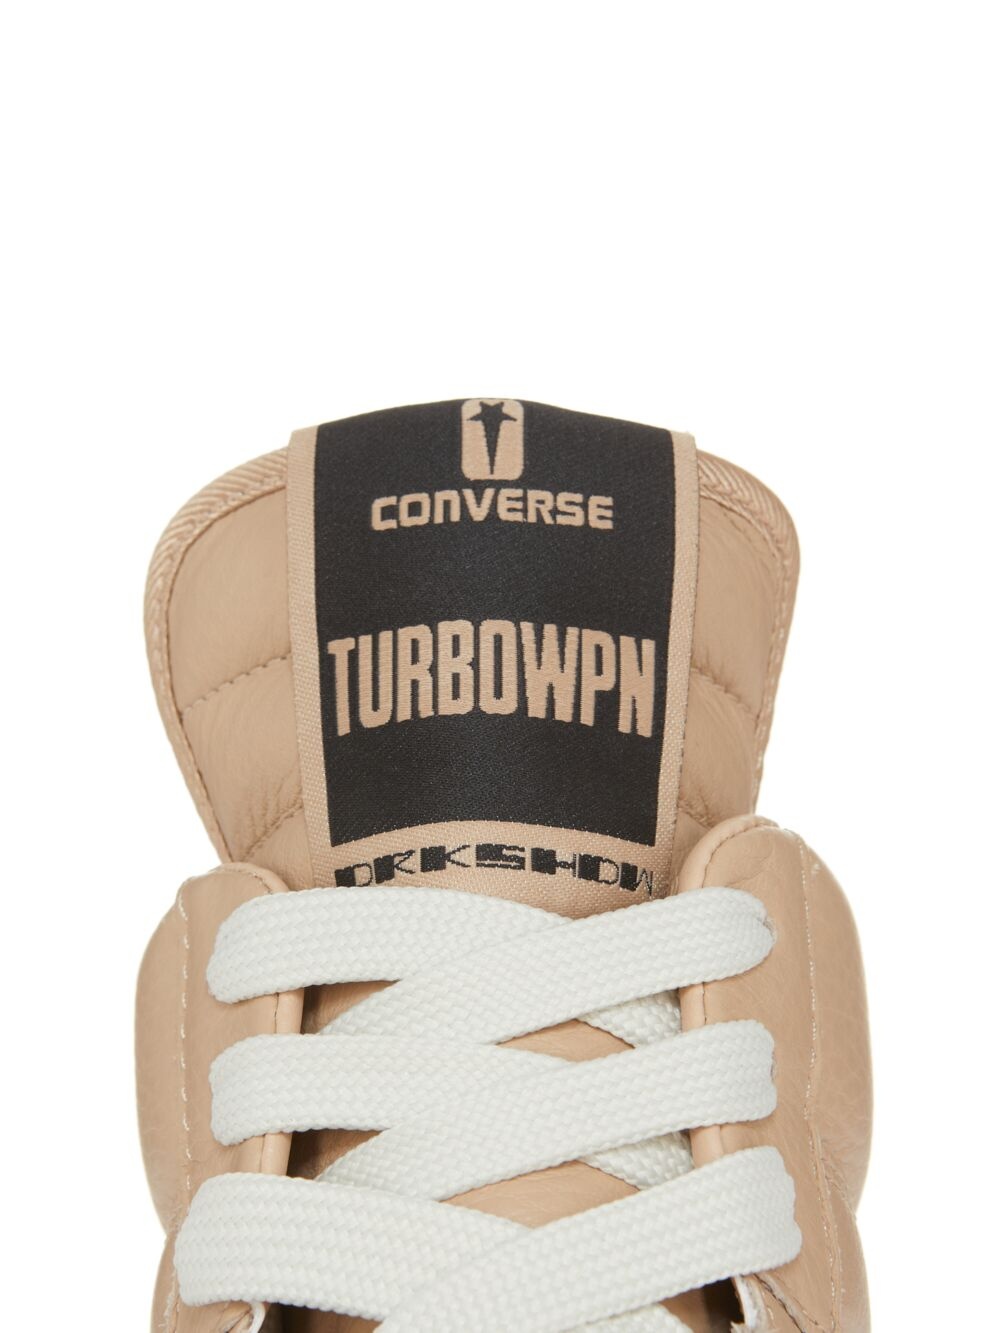 Turbowpn mid sneakers - 6